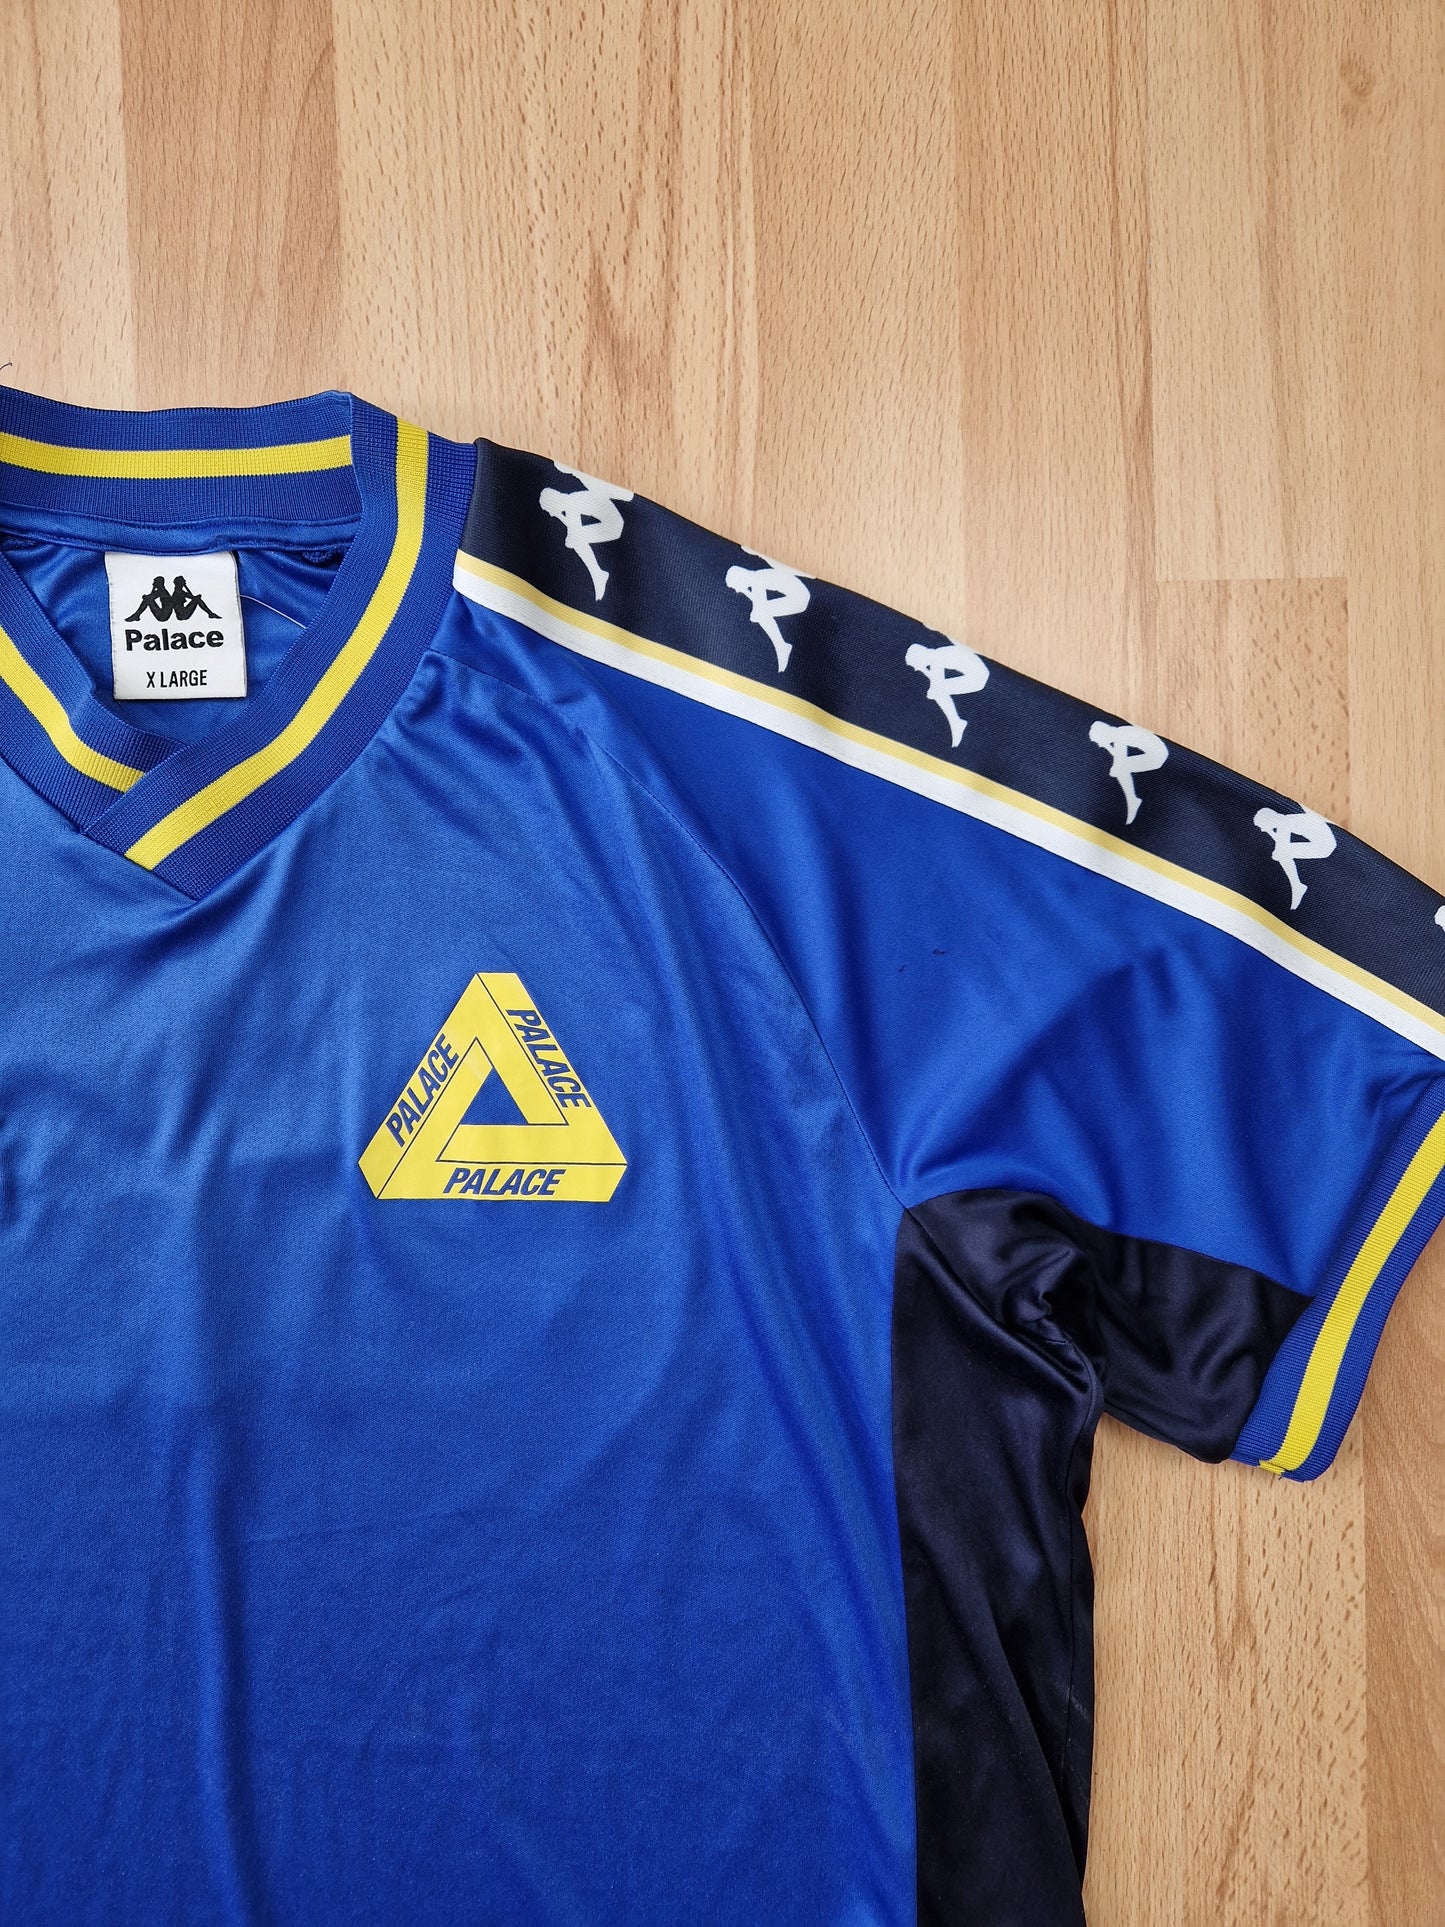 Palace x Kappa Football jersey (XL)